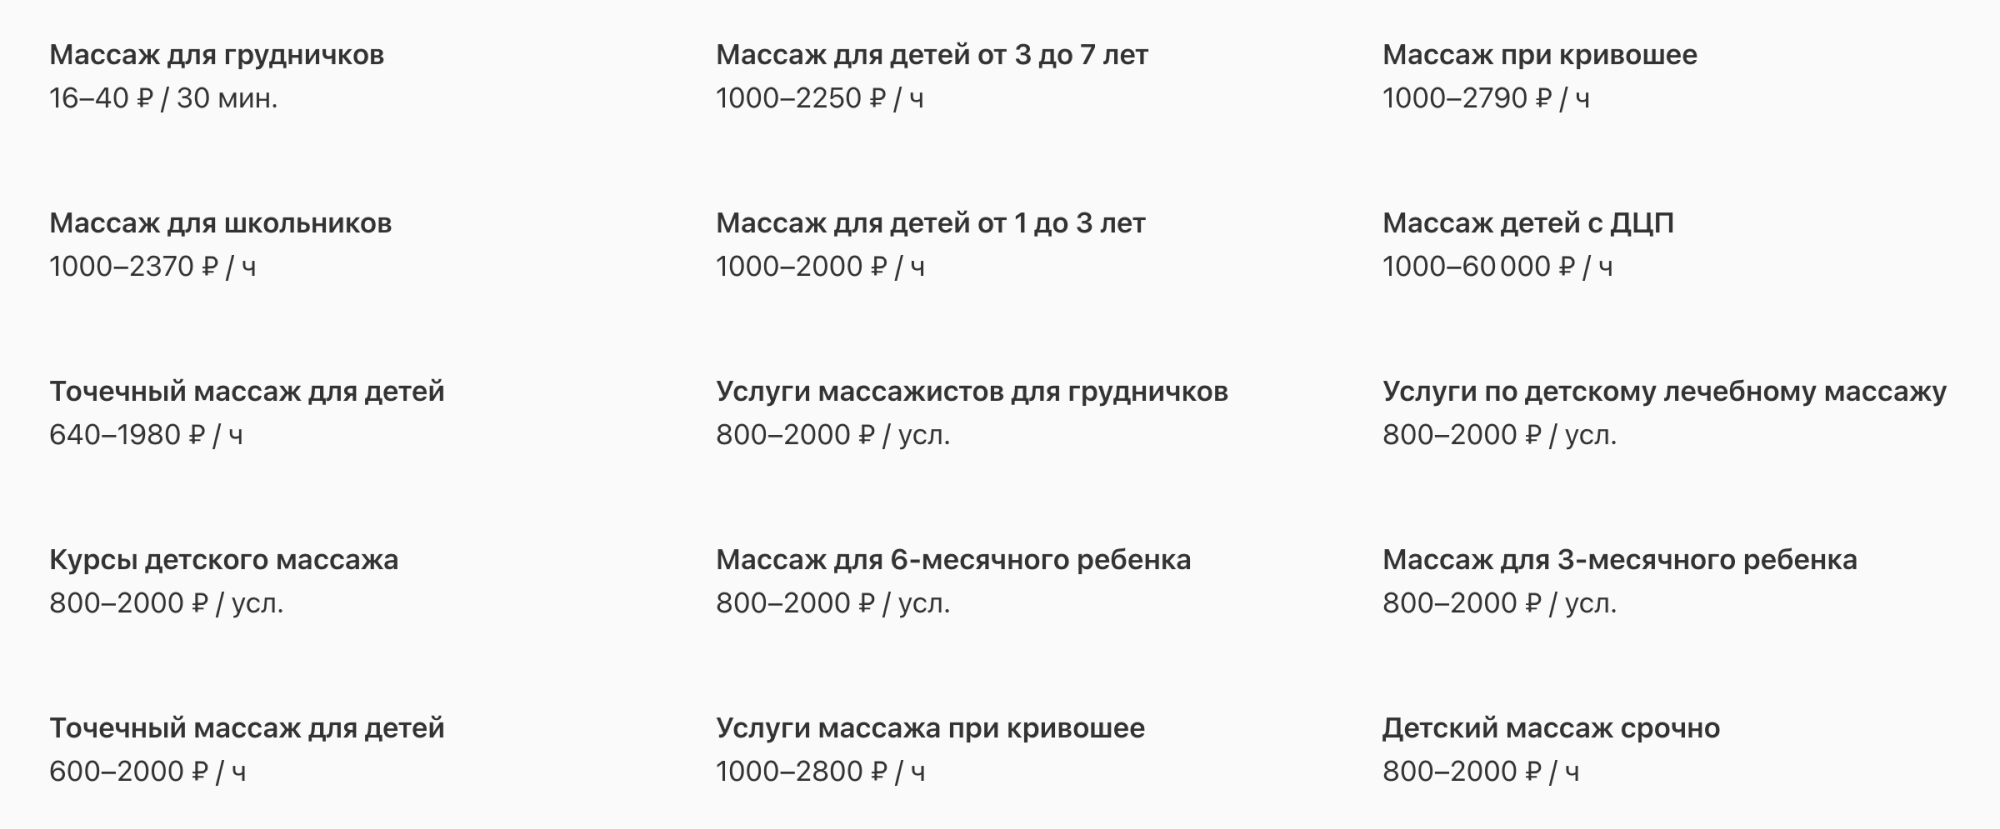 Стоимость массажа для грудничков по данным сайта «Профи-ру». Источник: profi.ru